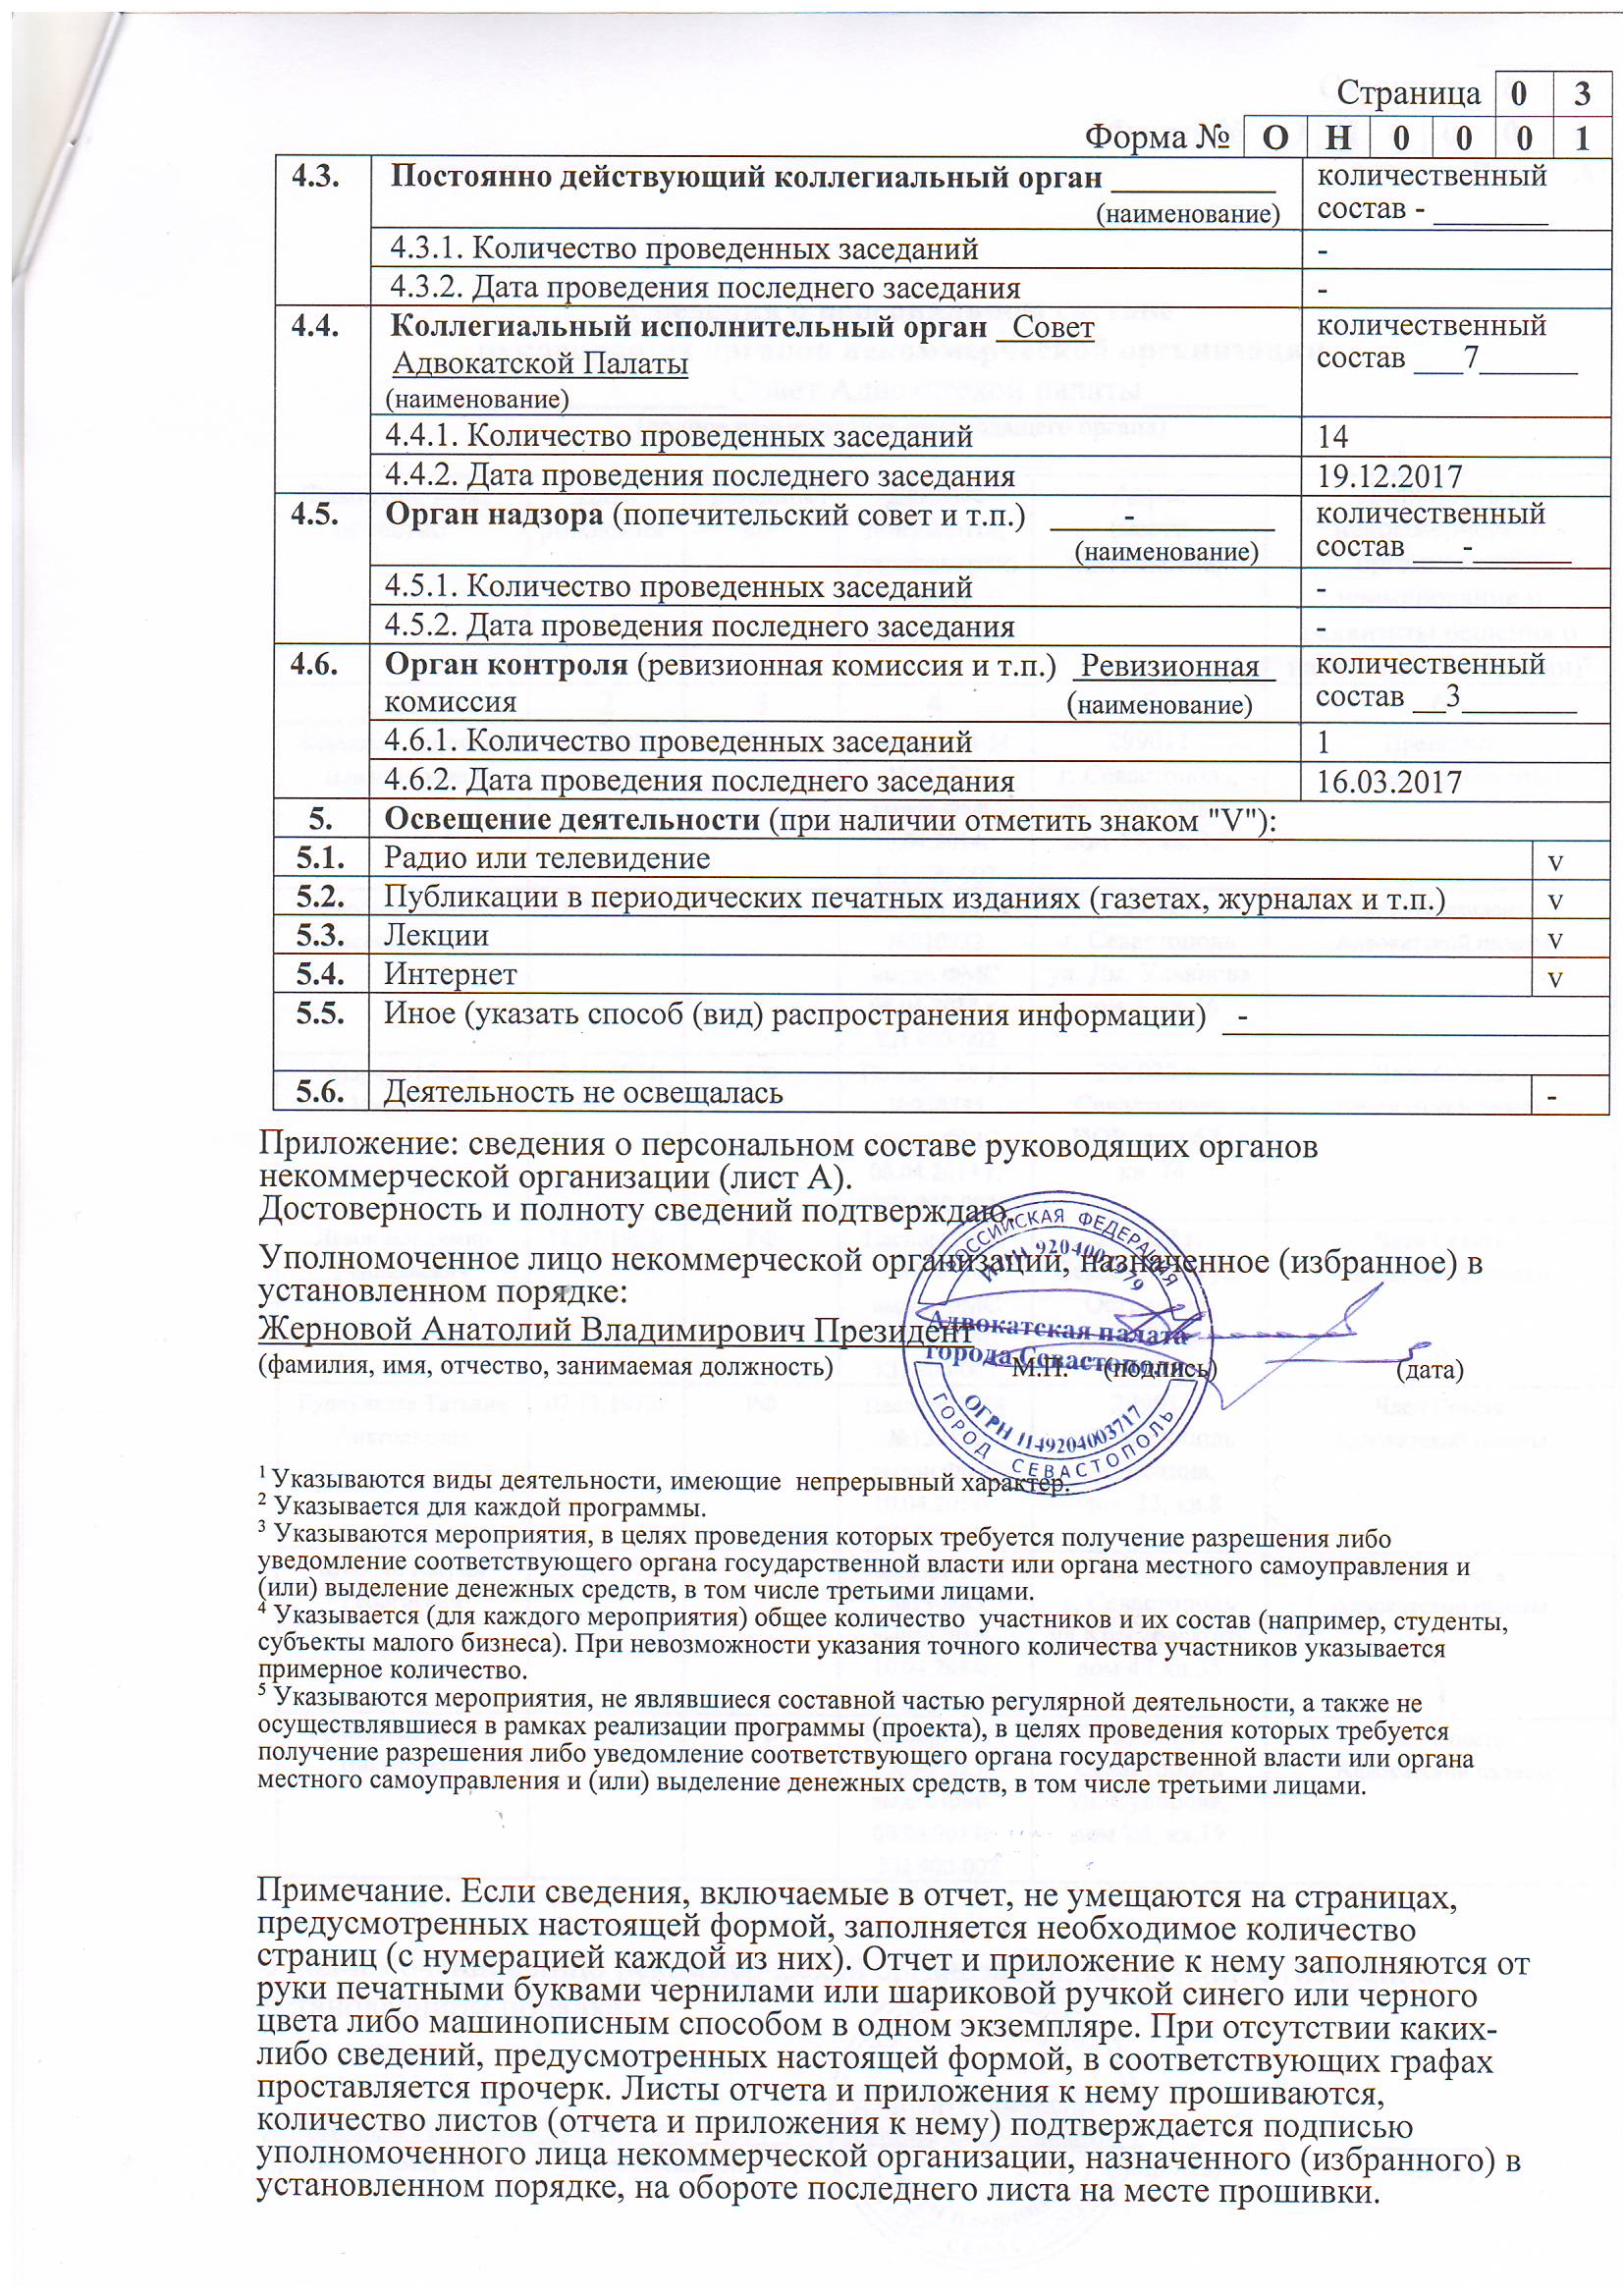 Уведомления, отчеты Адвокатской Палаты в Минюст за 2017 год